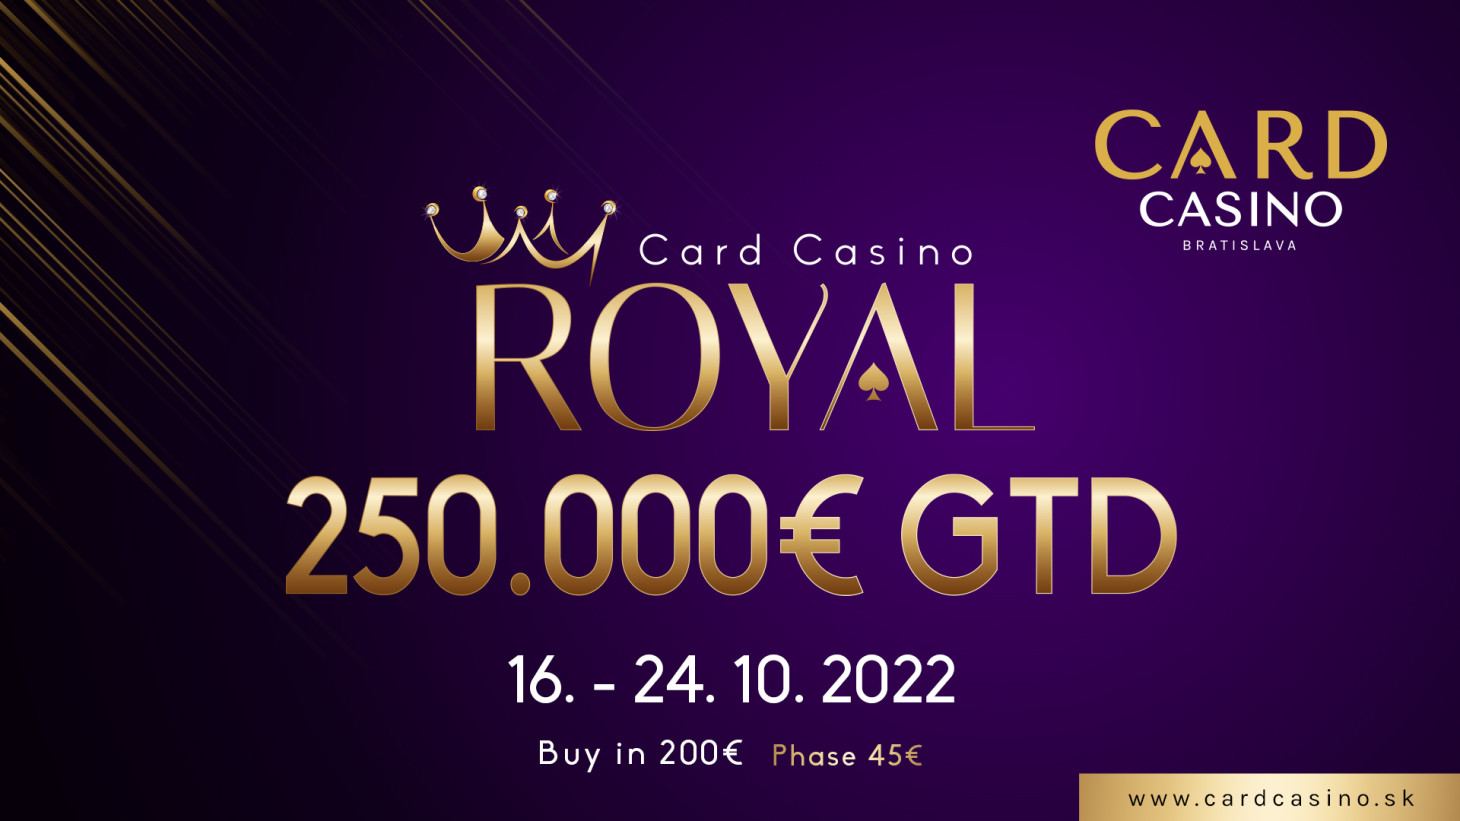 Machen Sie sich bereit für ein einzigartiges Turnier. Das €250.000 GTD Card Casino ROYAL wird im Oktober gespielt